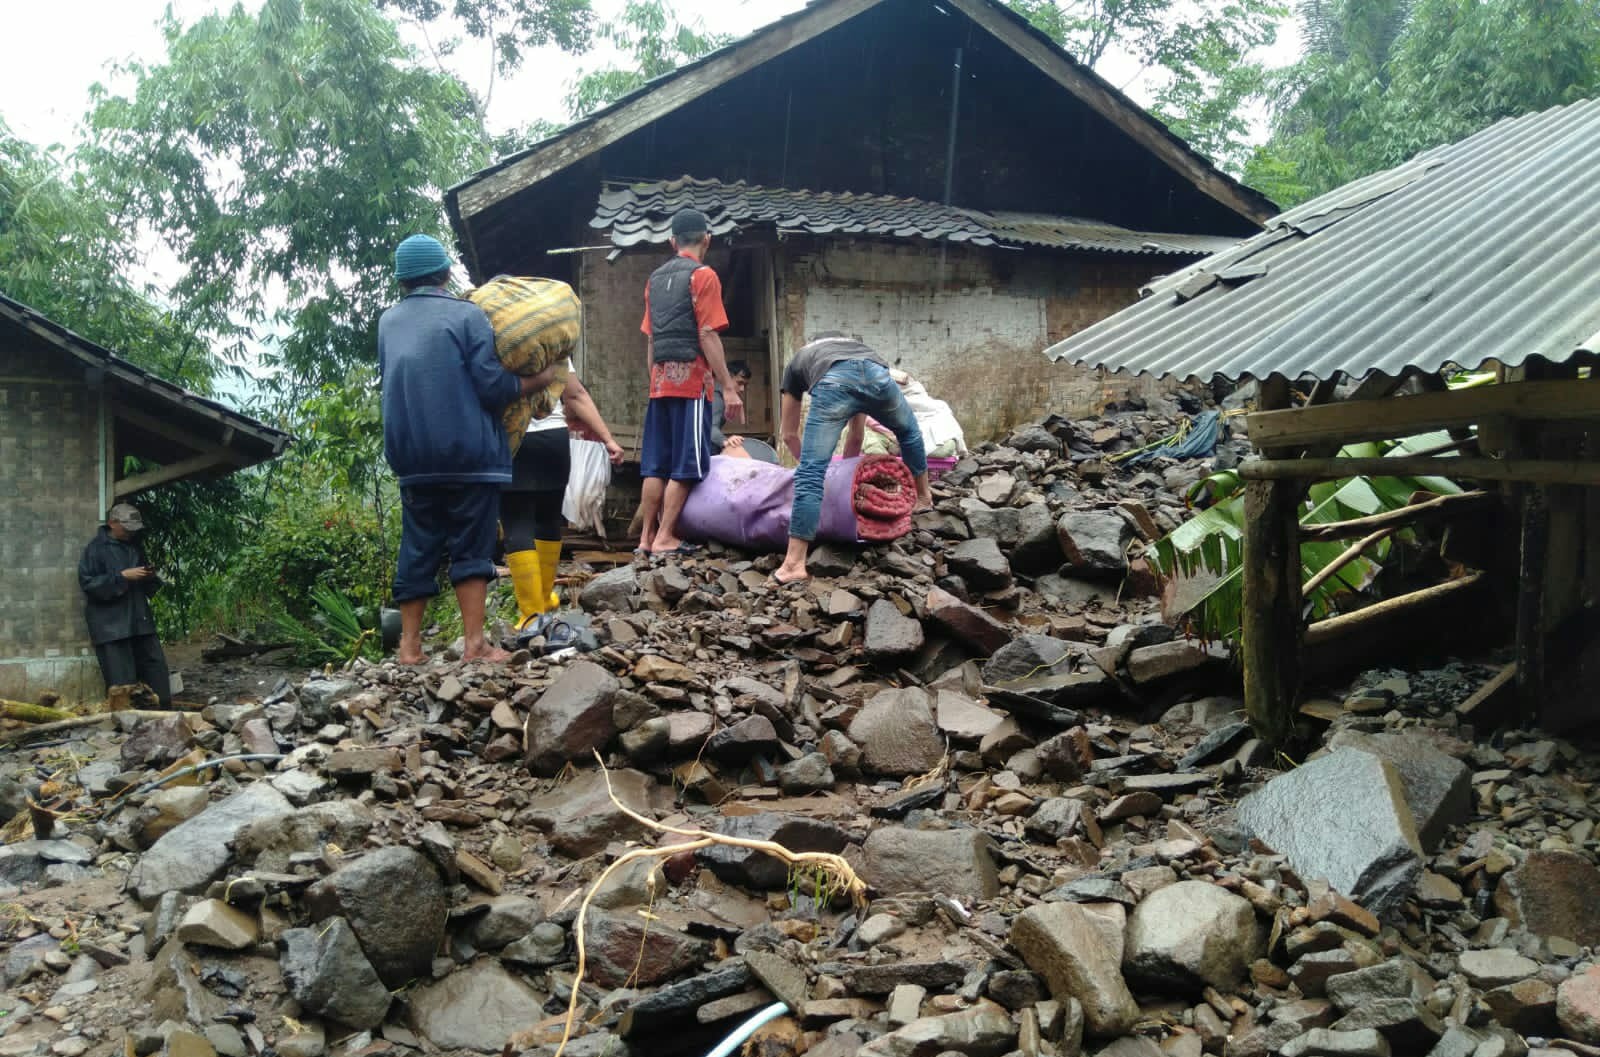 Sejumlah rumah warga di Desa Byalondung, Kecamatan Cisewu, Kabupaten Garut rusak akibat terjangan tanah longsor yang terjadi Sabtu (25/12/2021) (Foto: Istimewa)